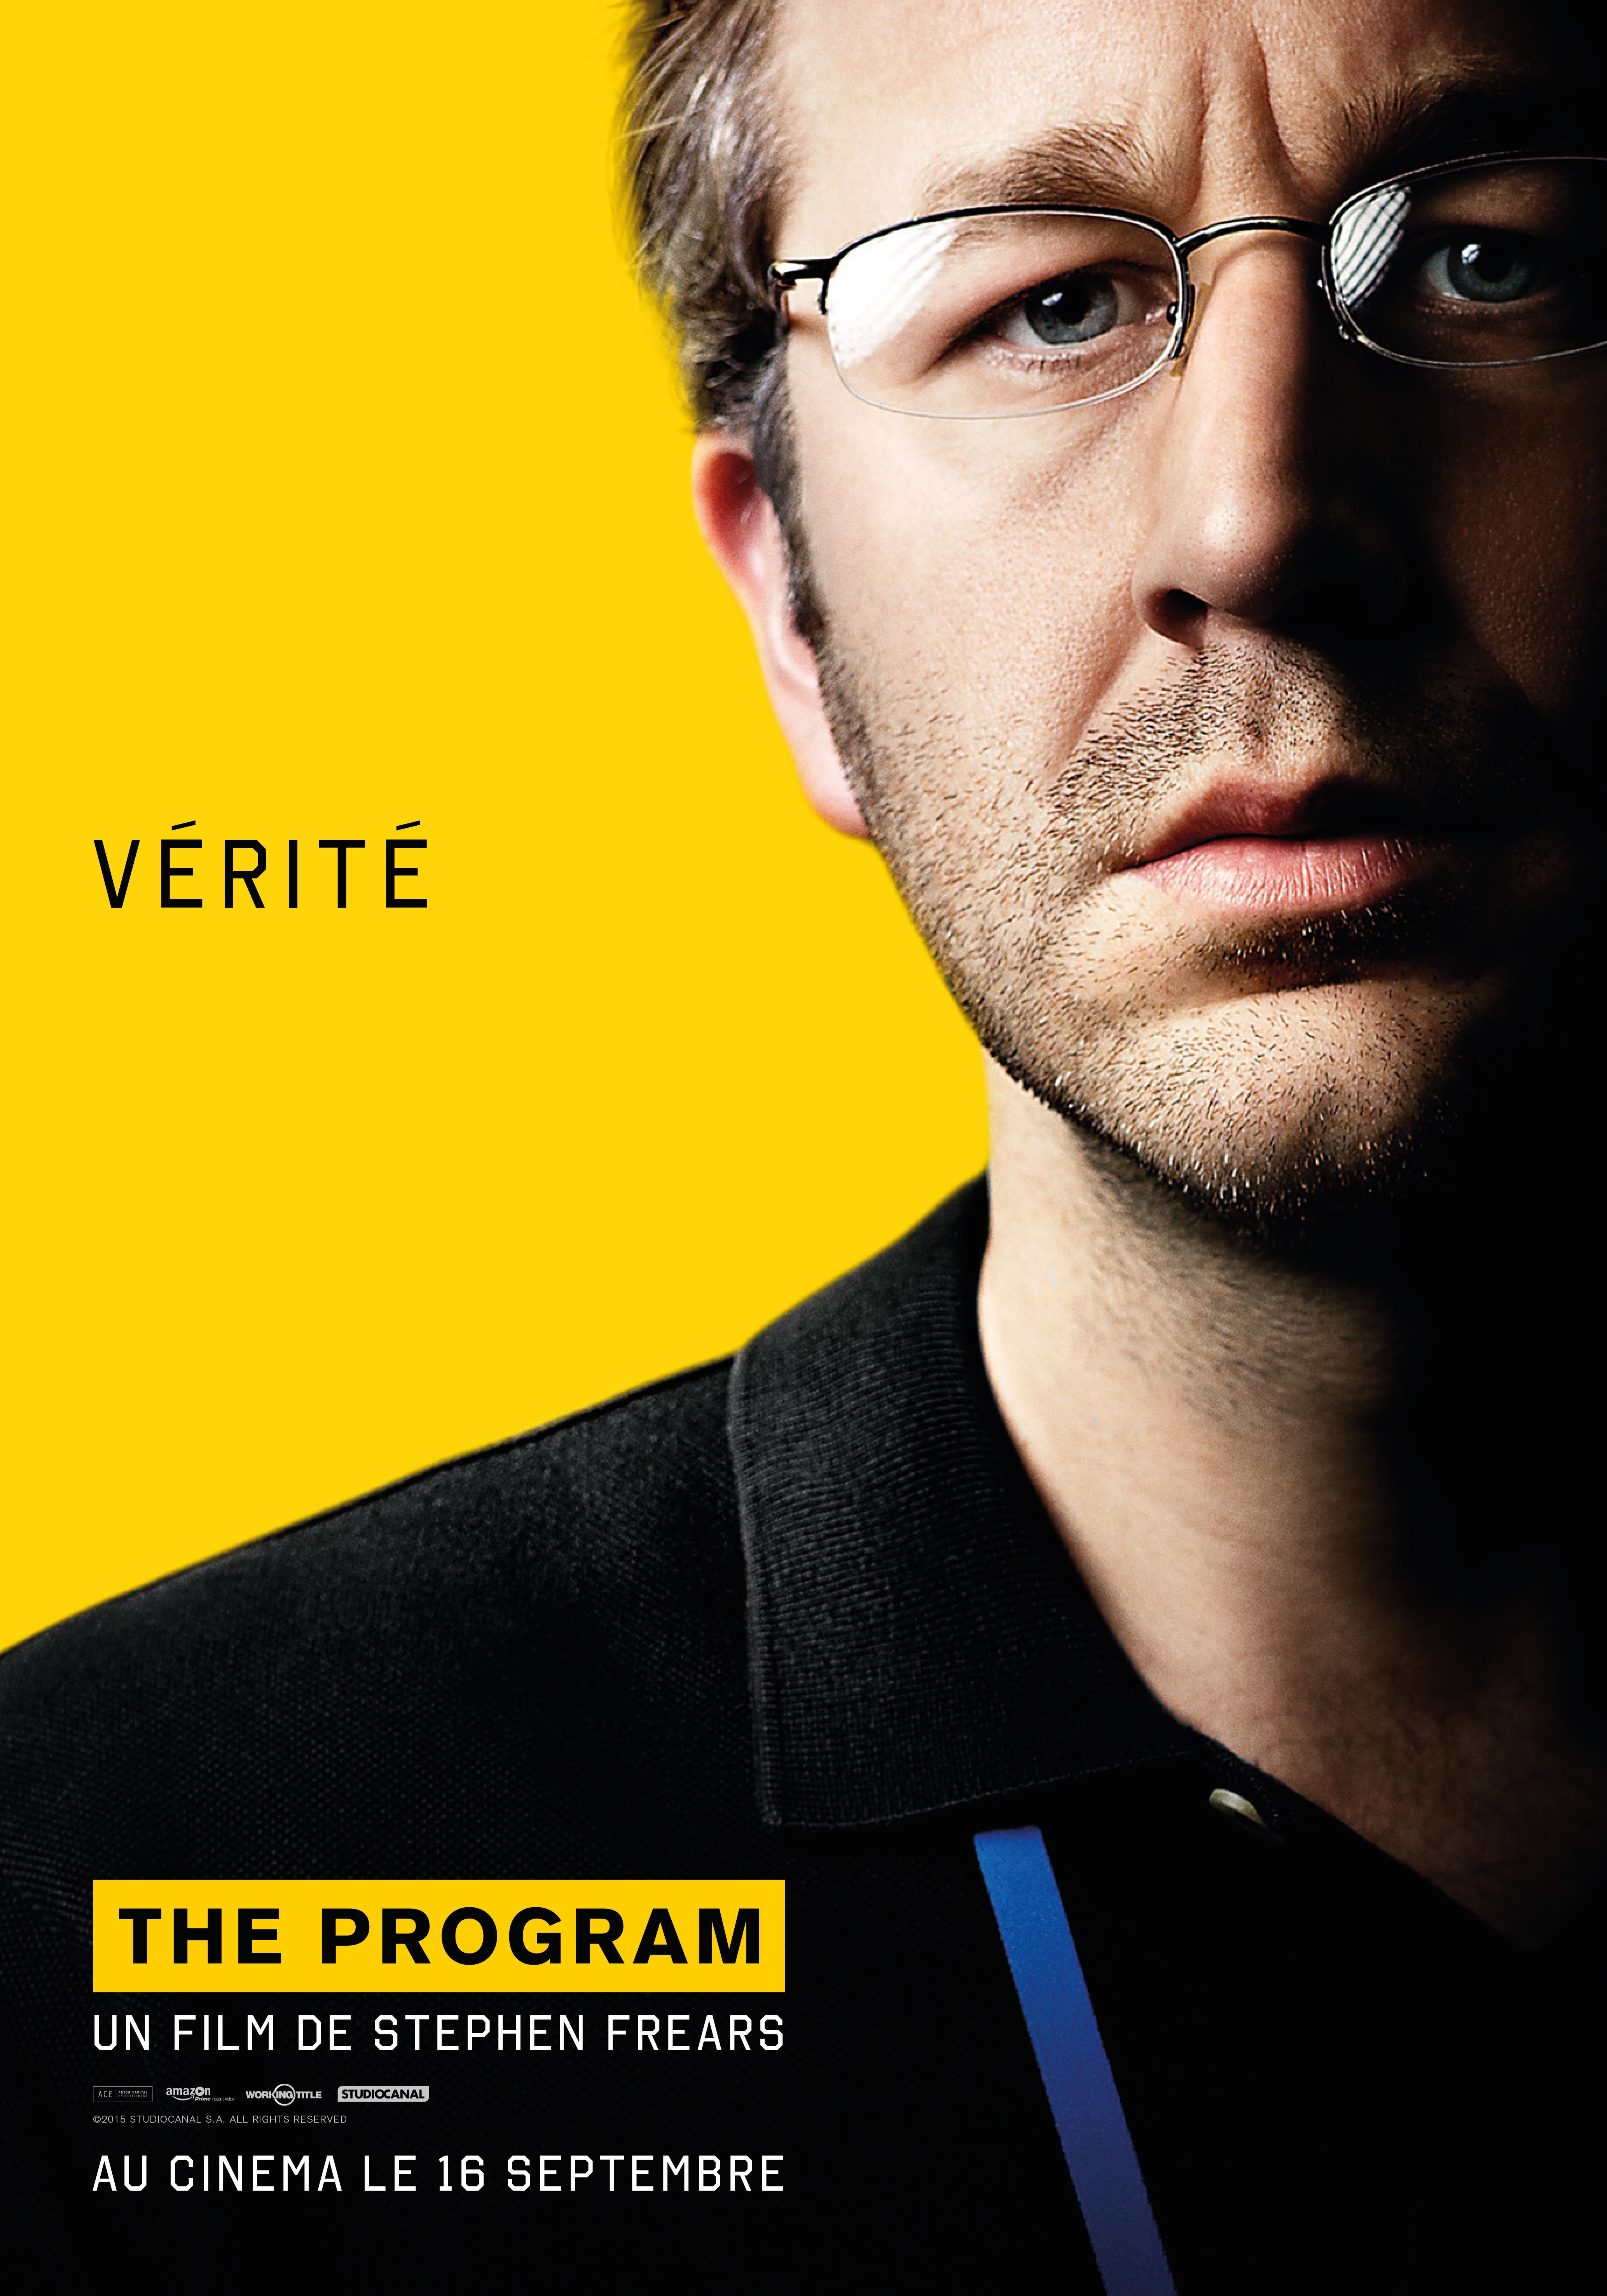 Affiche du film The Program réalisé par Stephen Frears avec Chris O’Dowd et la tagline 'Vérité